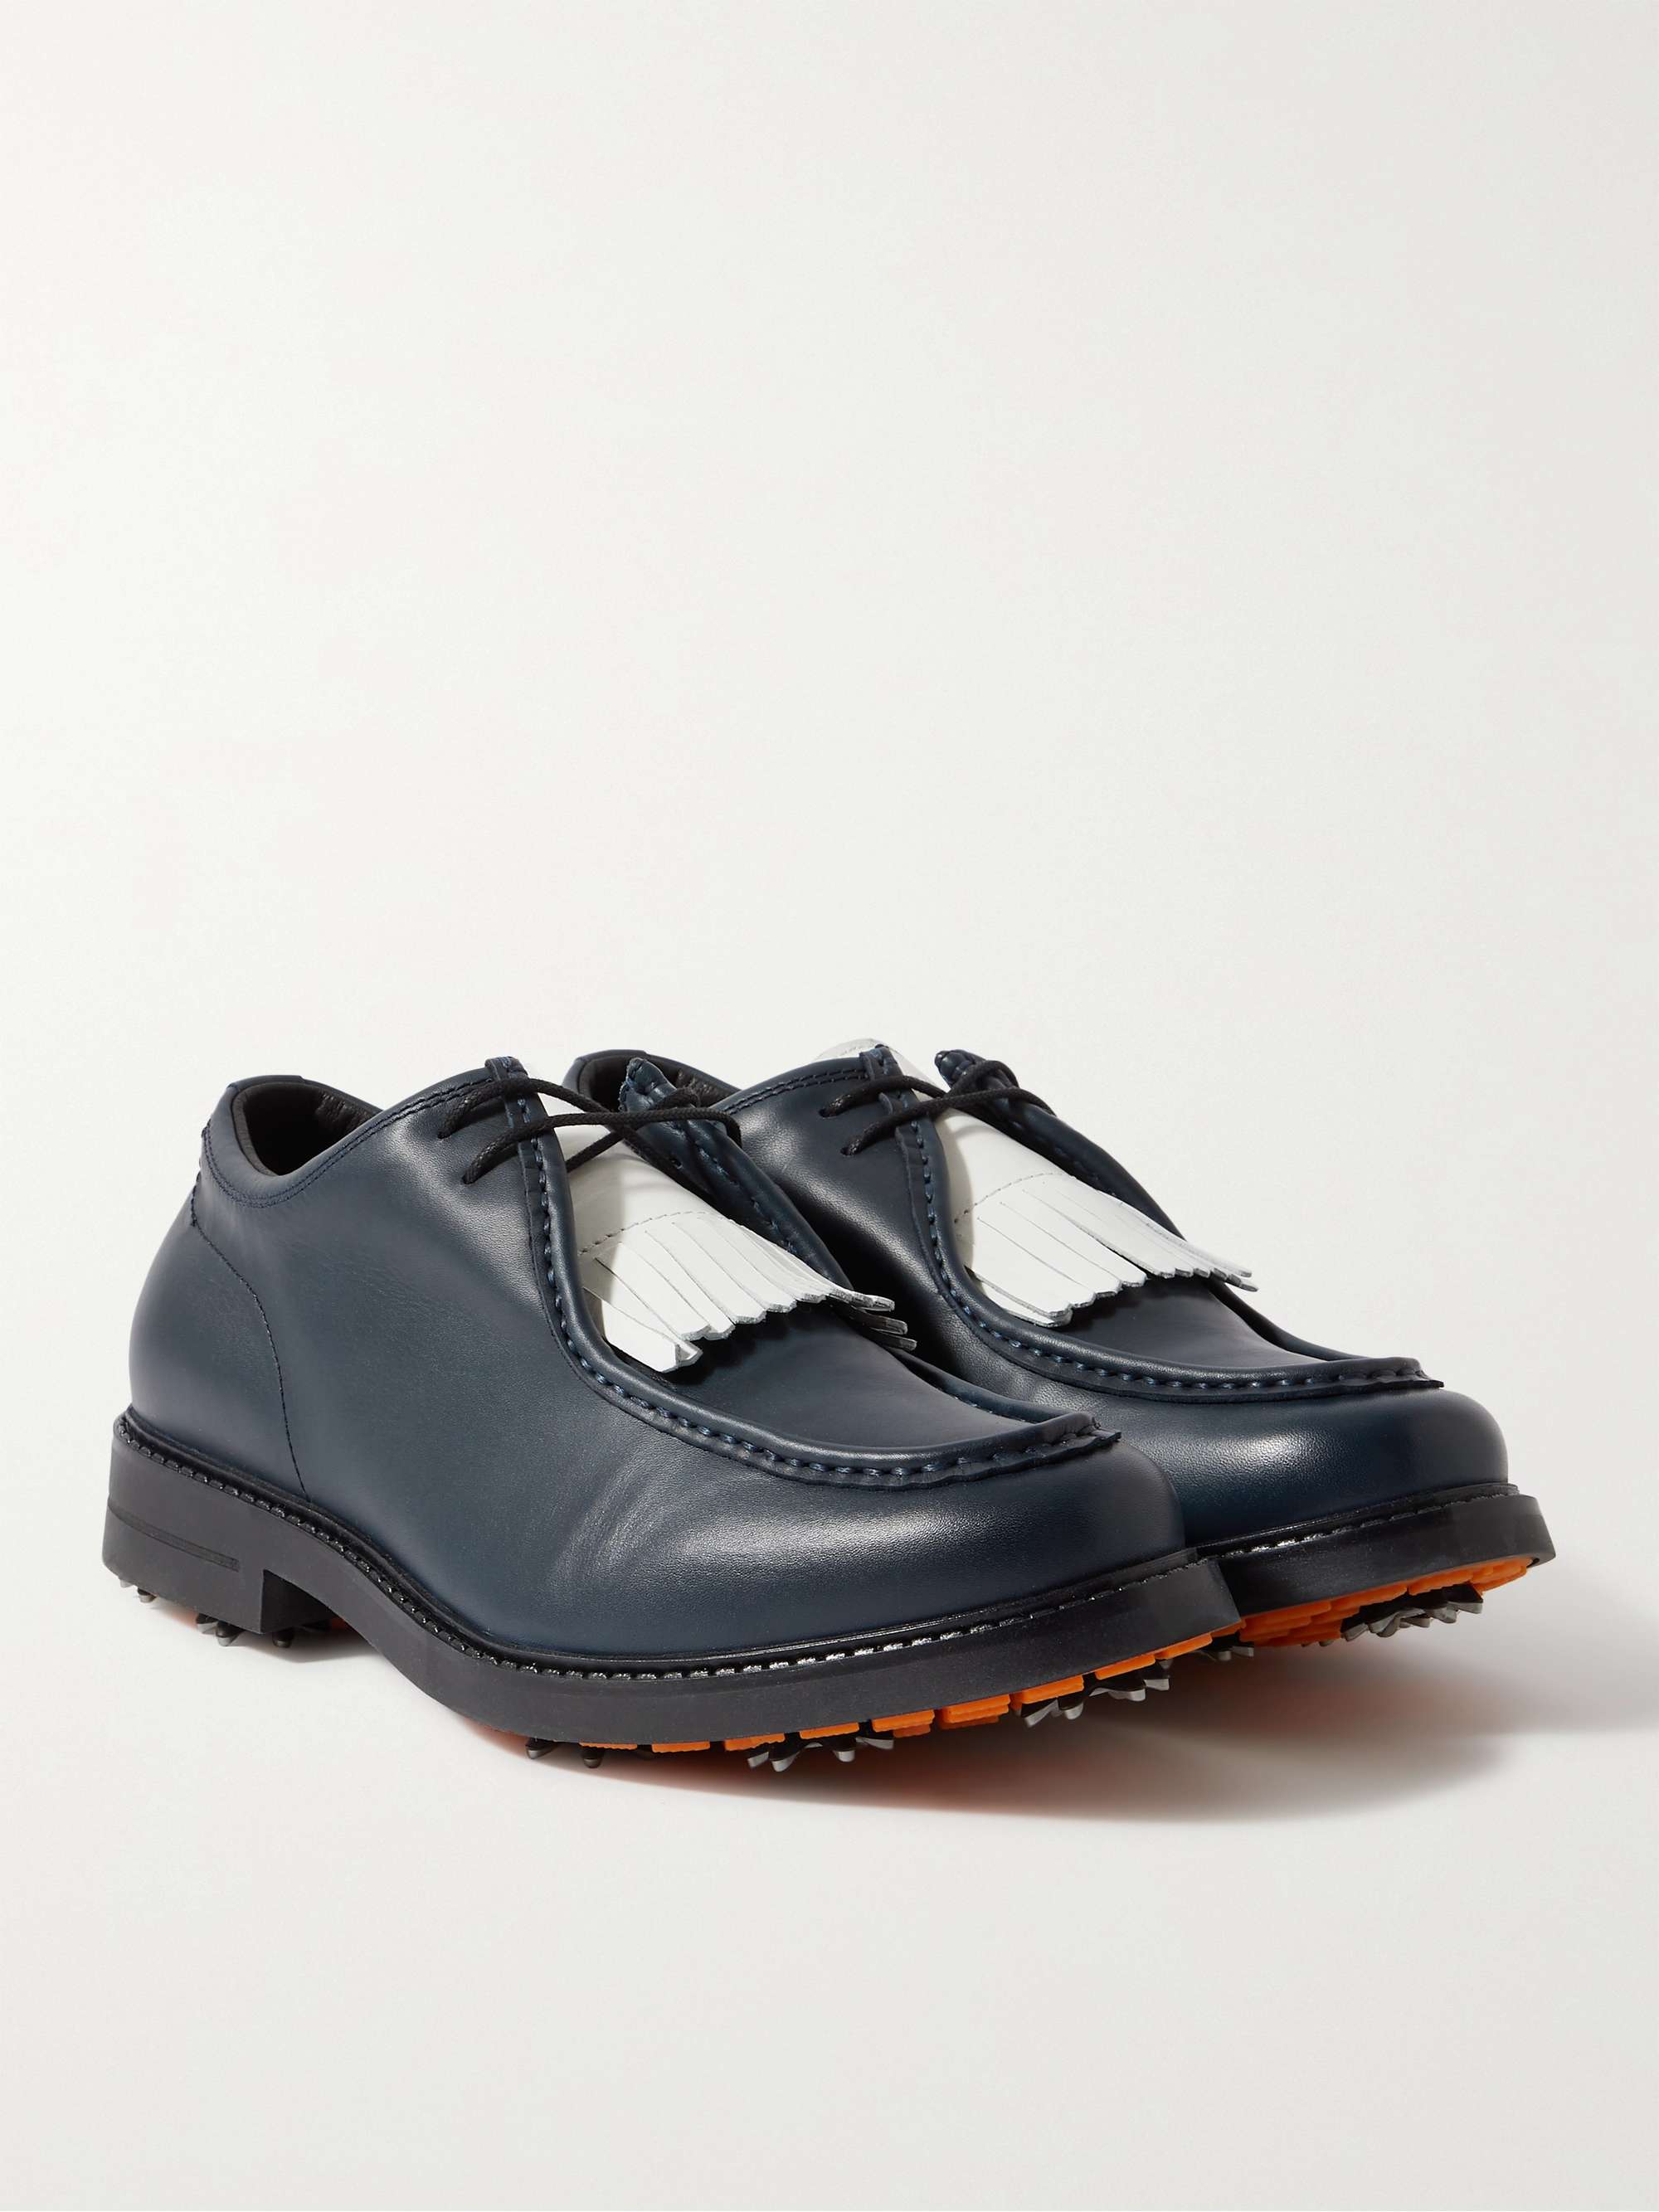 MR P. Pebble-Grain Leather Kiltie Derby Golf Shoes